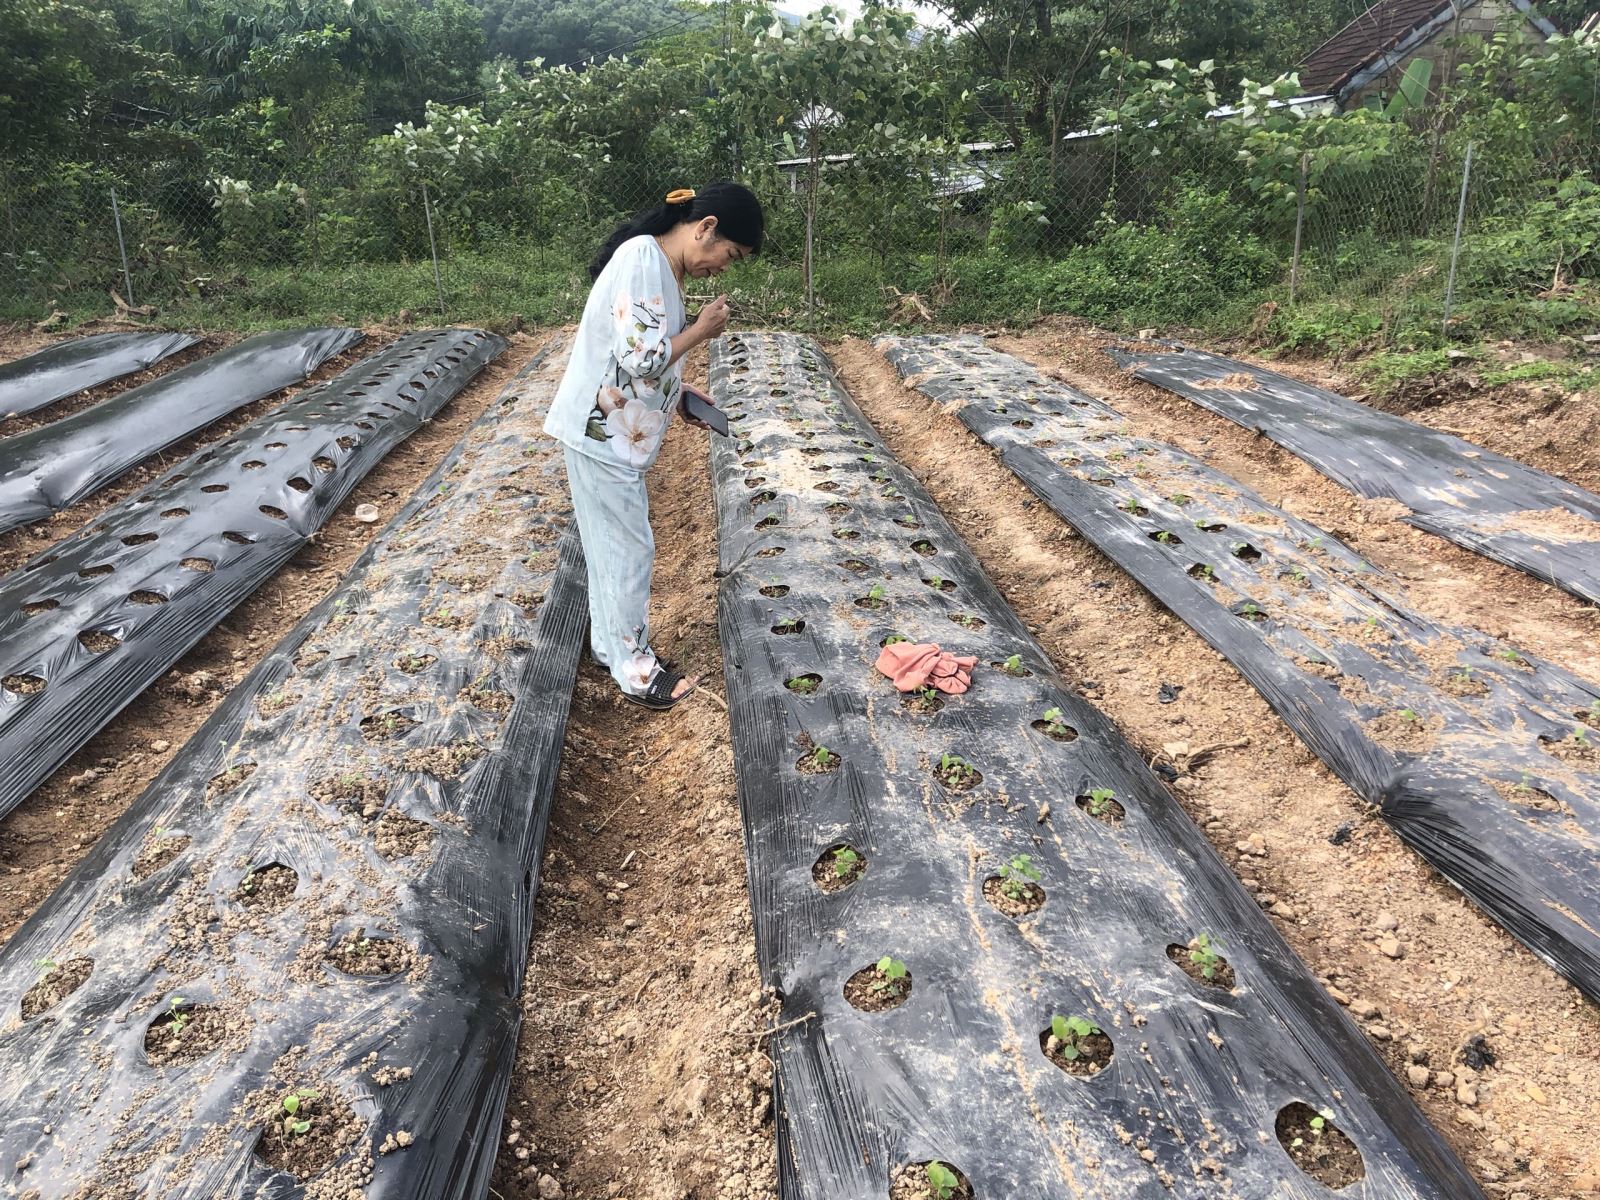  TX. Hương Thủy triển khai trồng thử nghiệm 2.500m2 cây sâm Bố Chính theo phương pháp hữu cơ trên đất vùng gò đồi ở xã Phú Sơn.